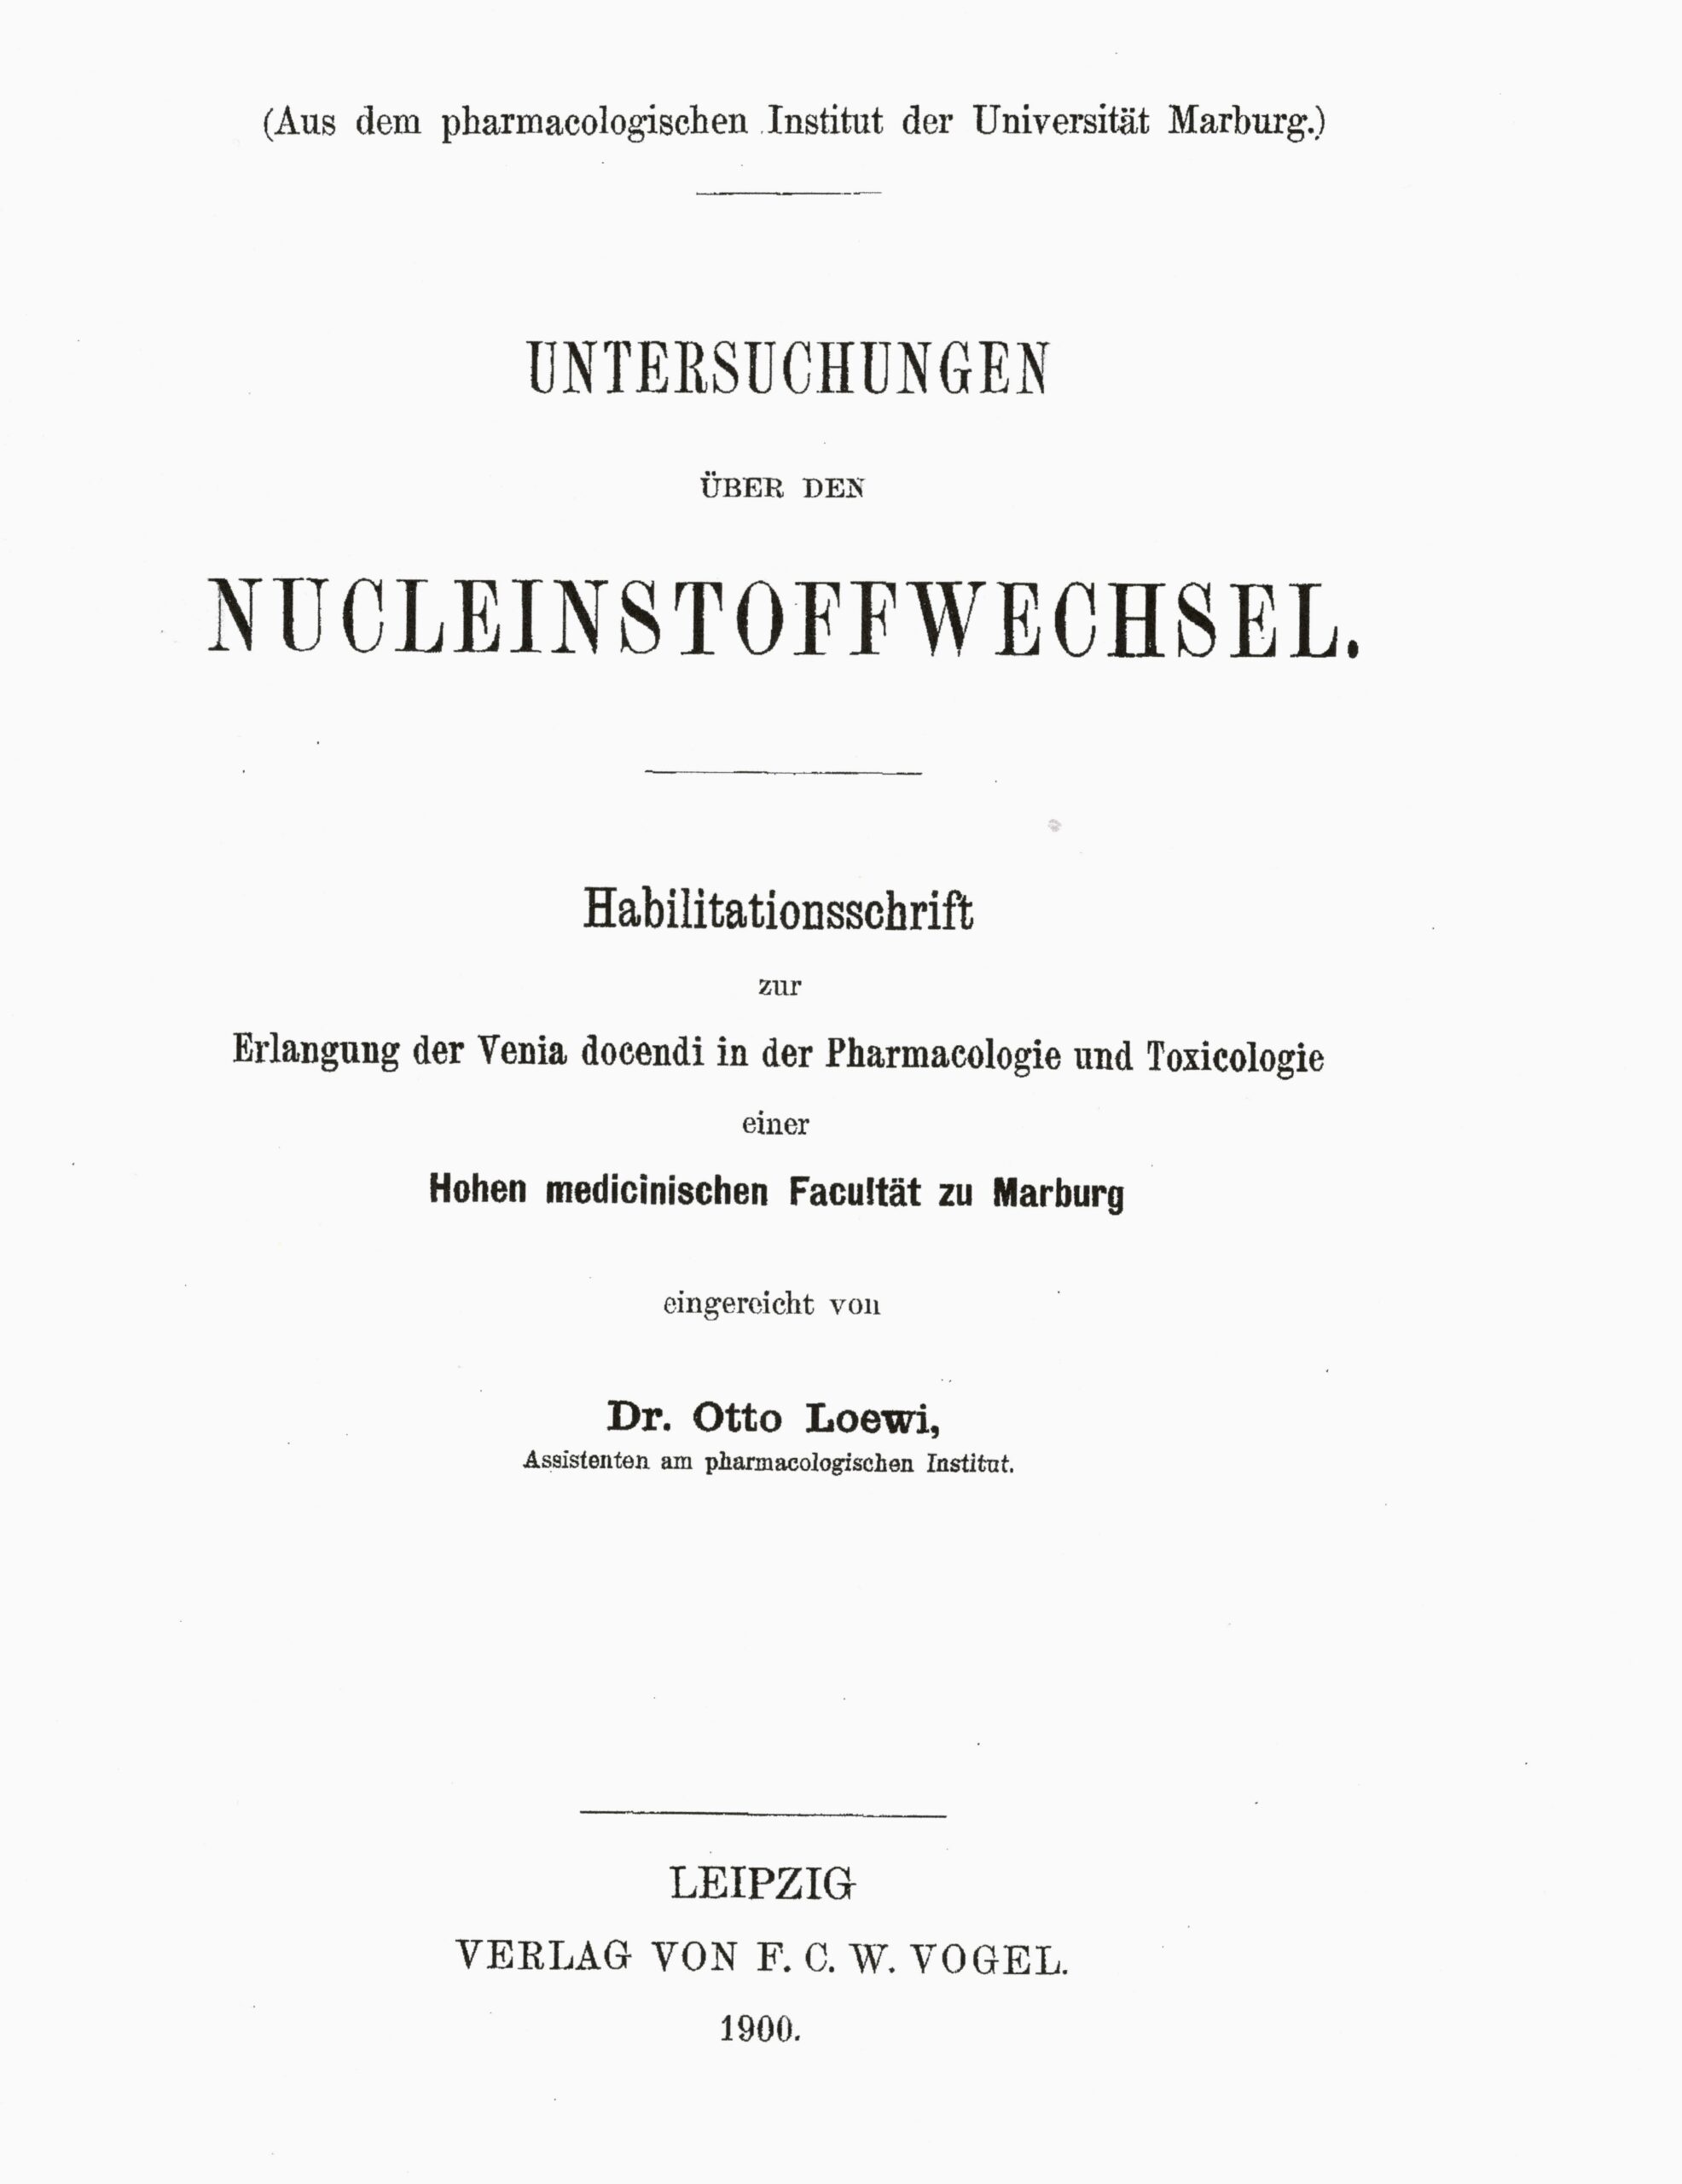 Habilitationsschrift, Marburg 1900